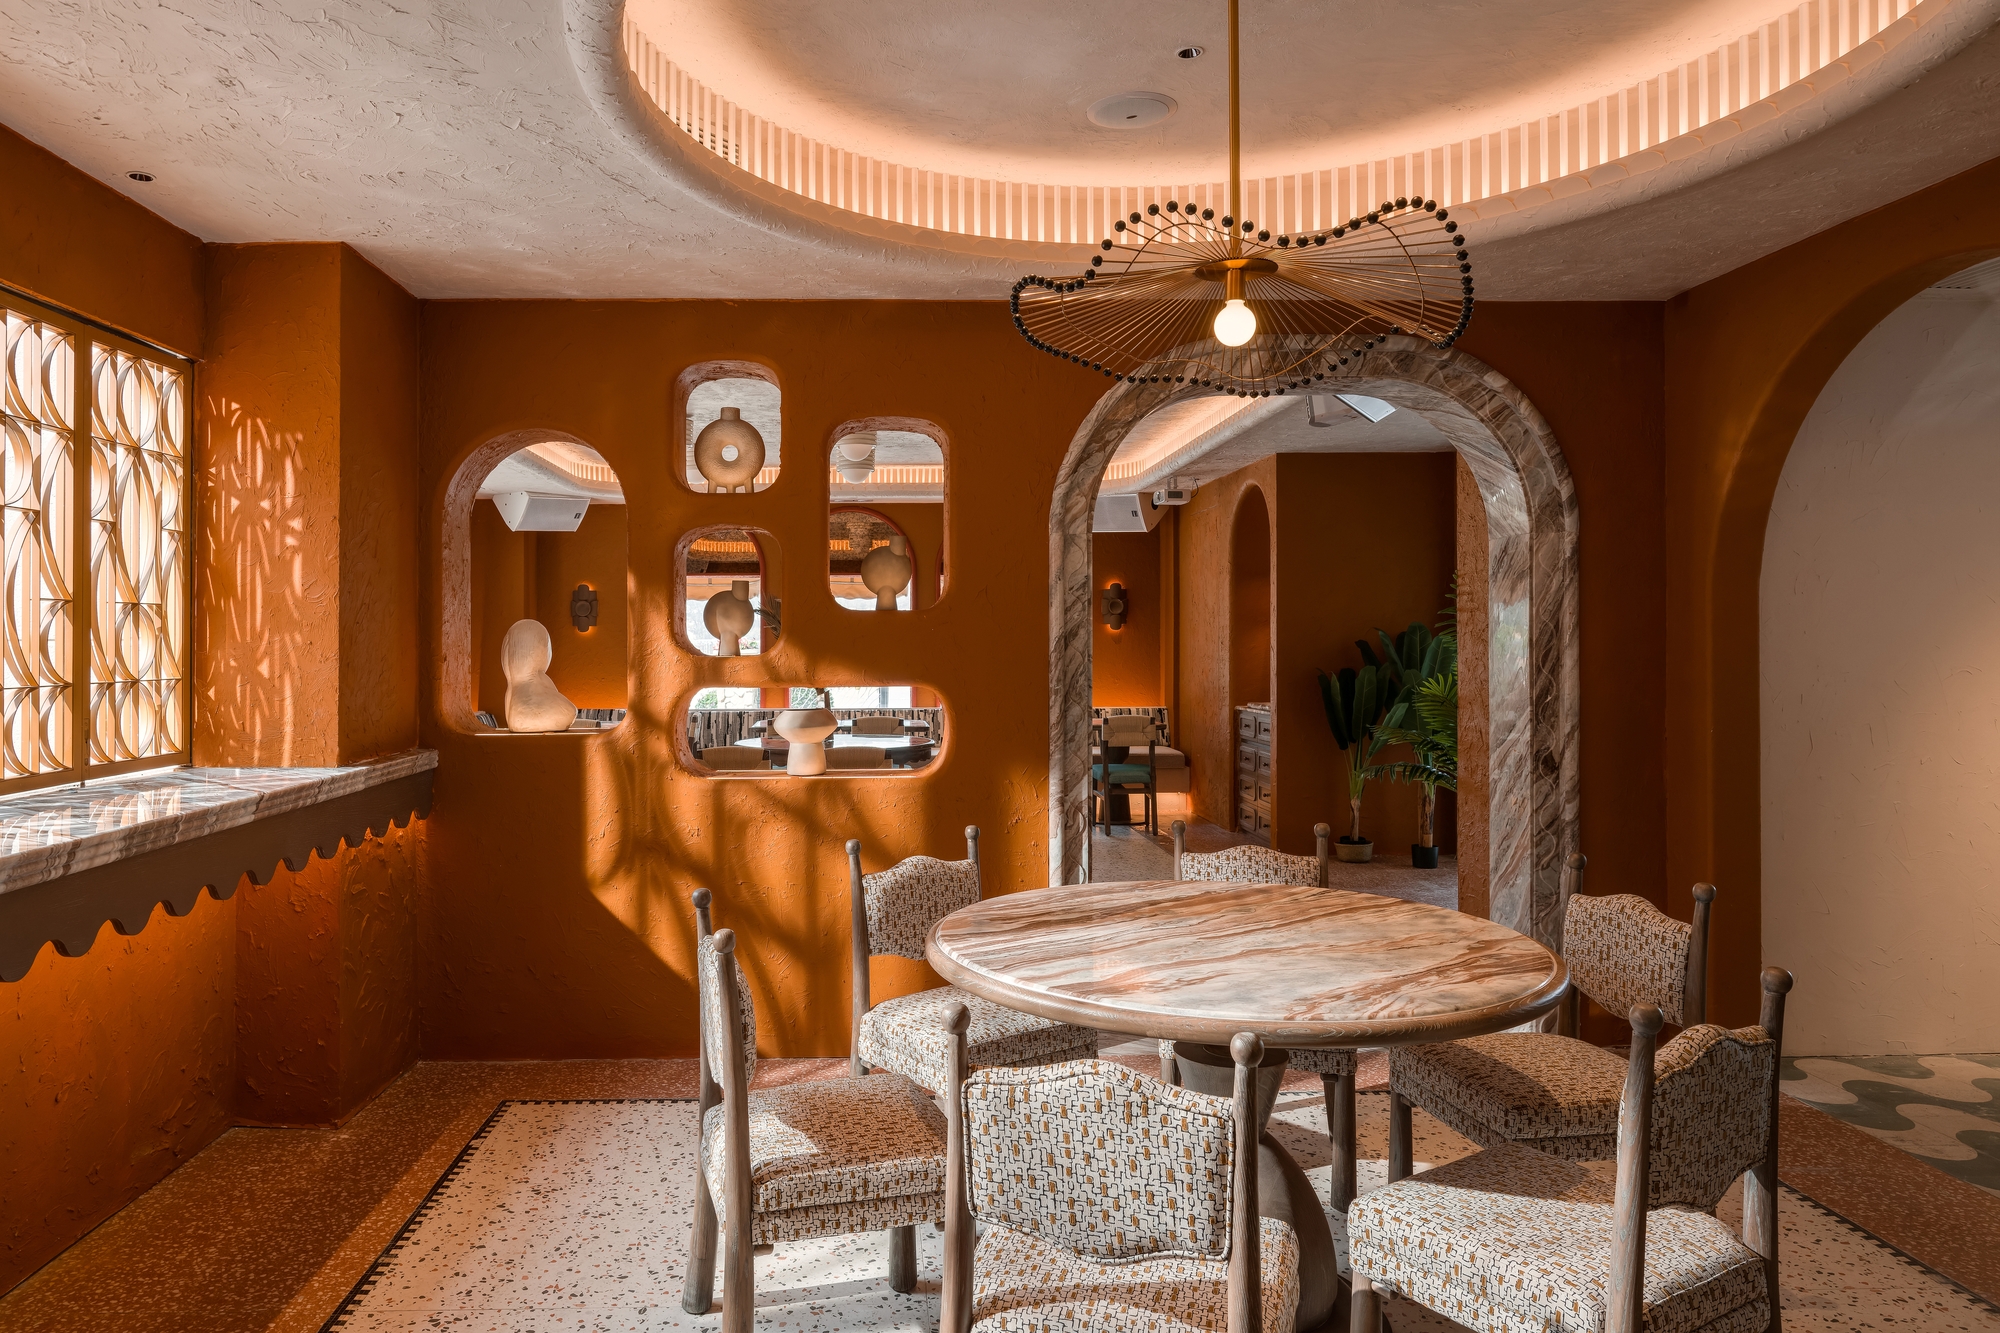 图片[8]|ONA餐厅|ART-Arrakis | 建筑室内设计的创新与灵感